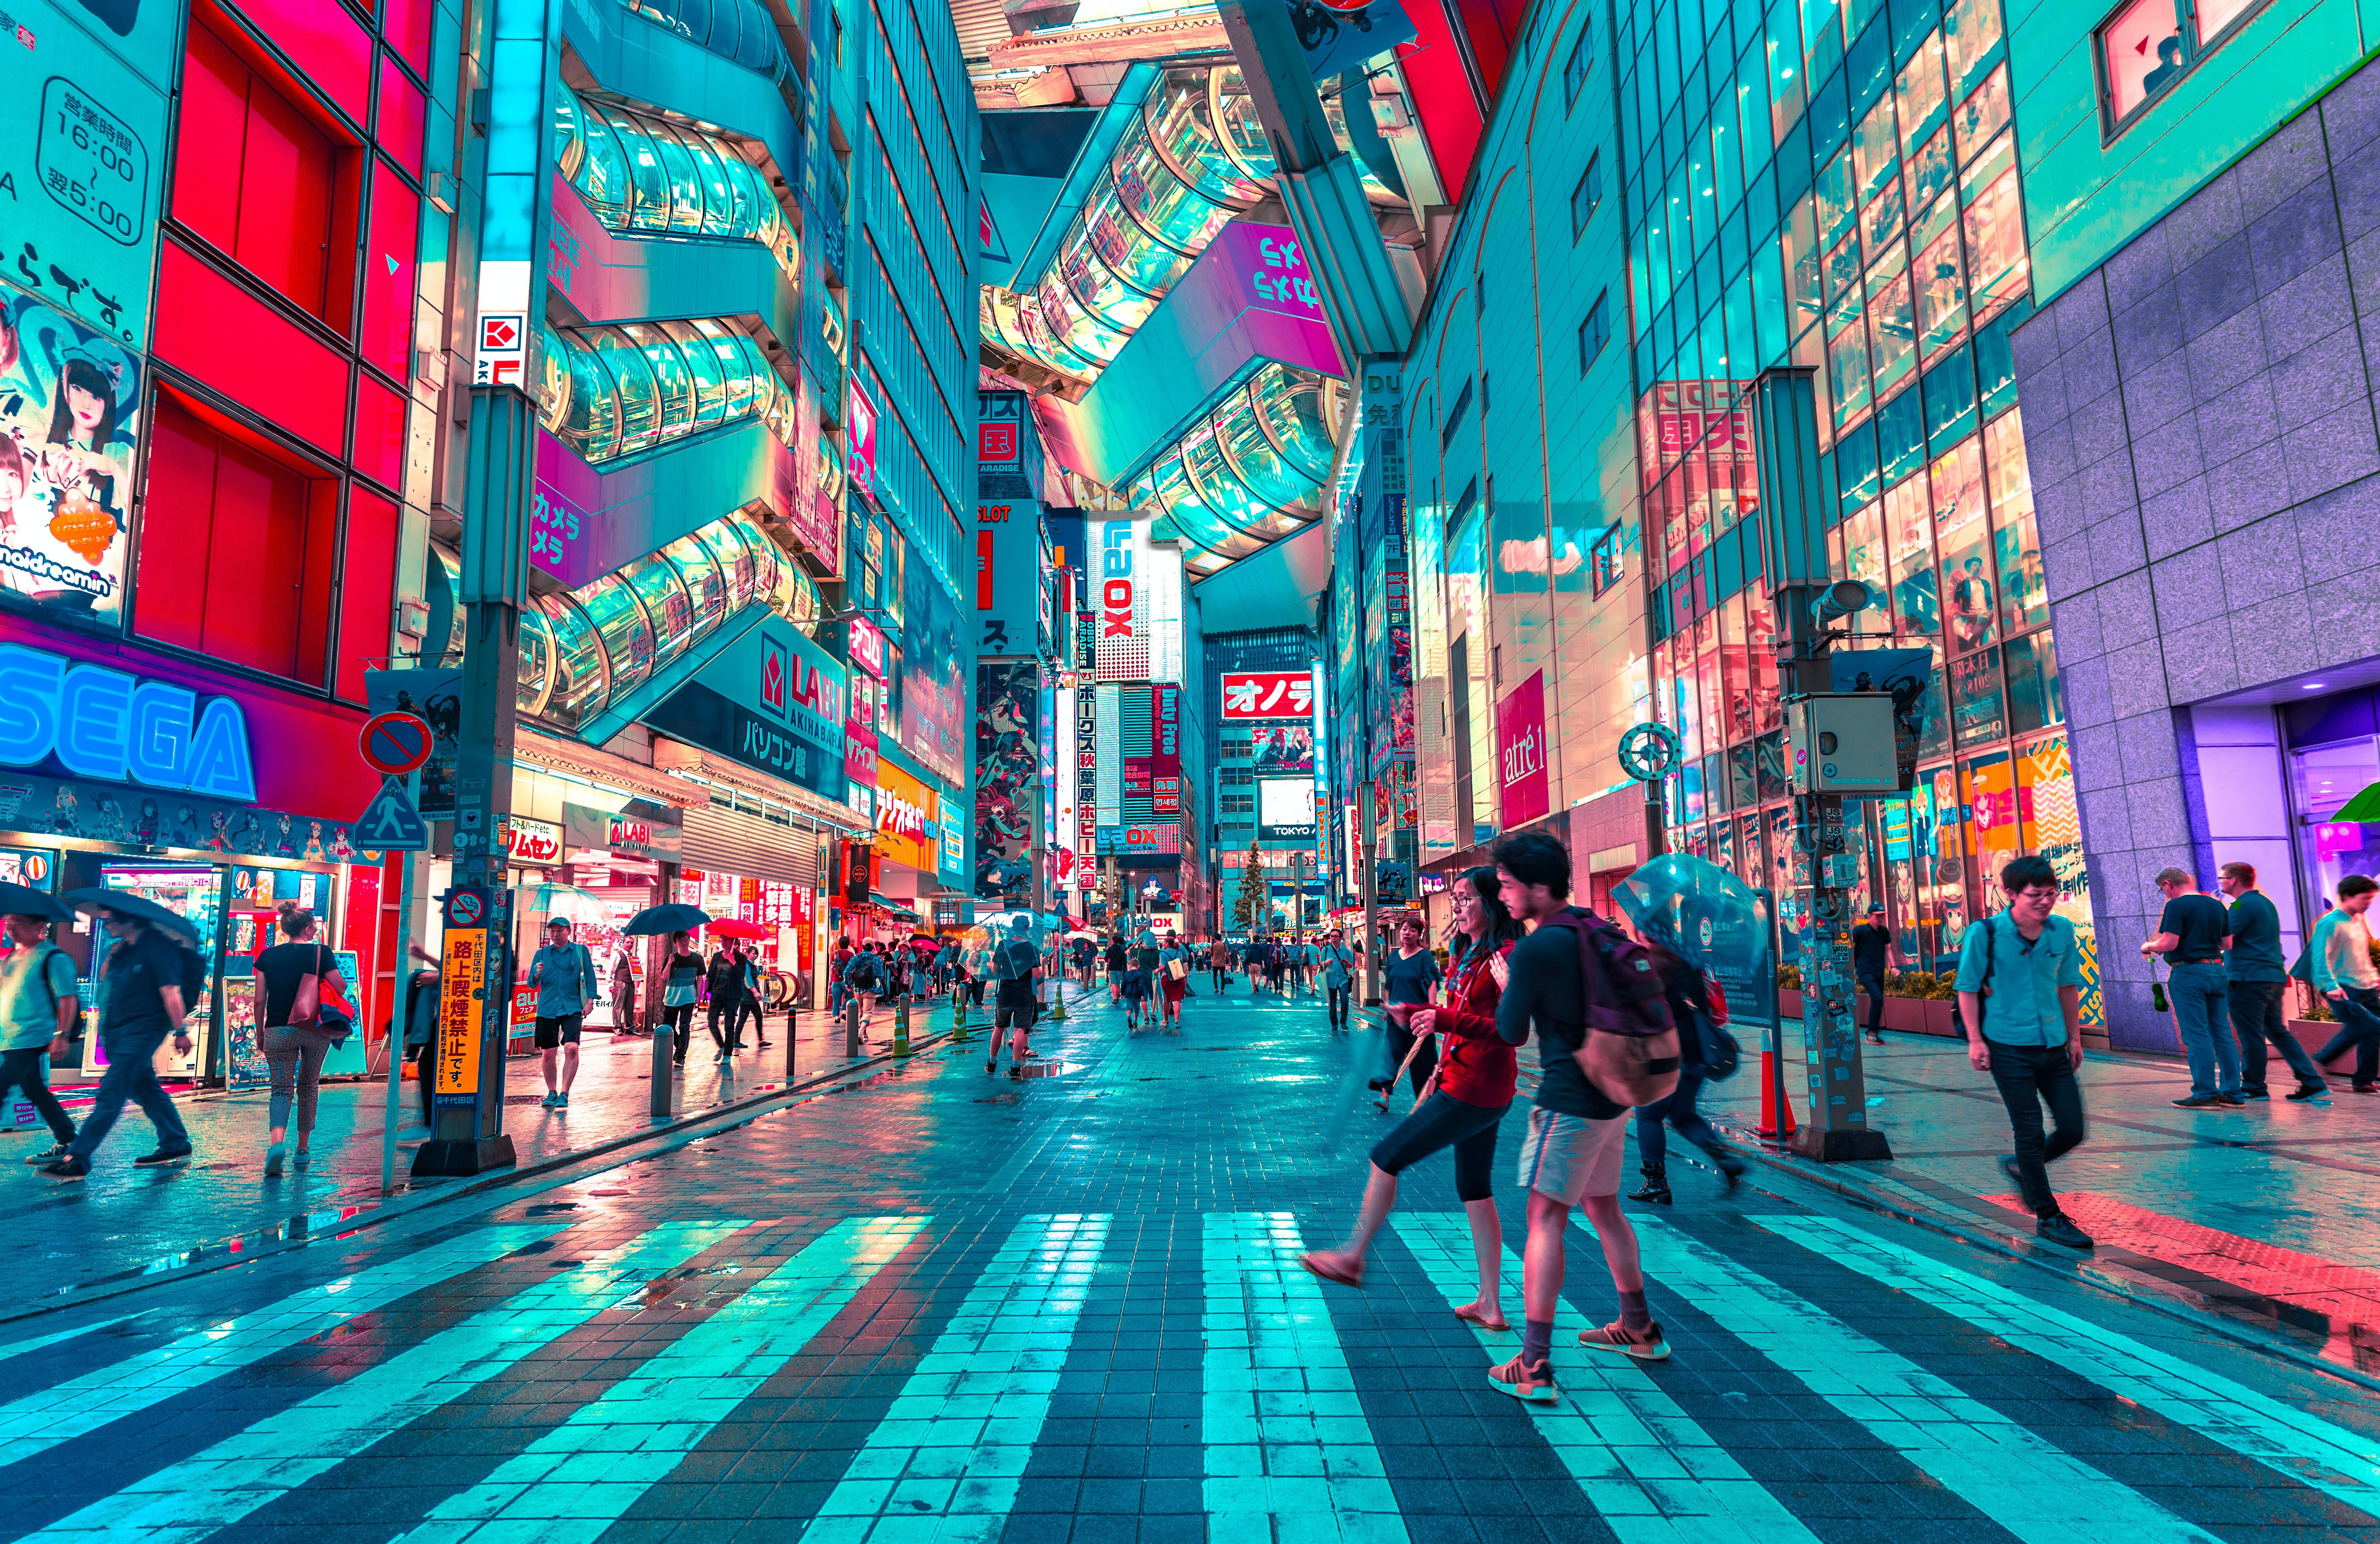 tokió biztonság város utazás 